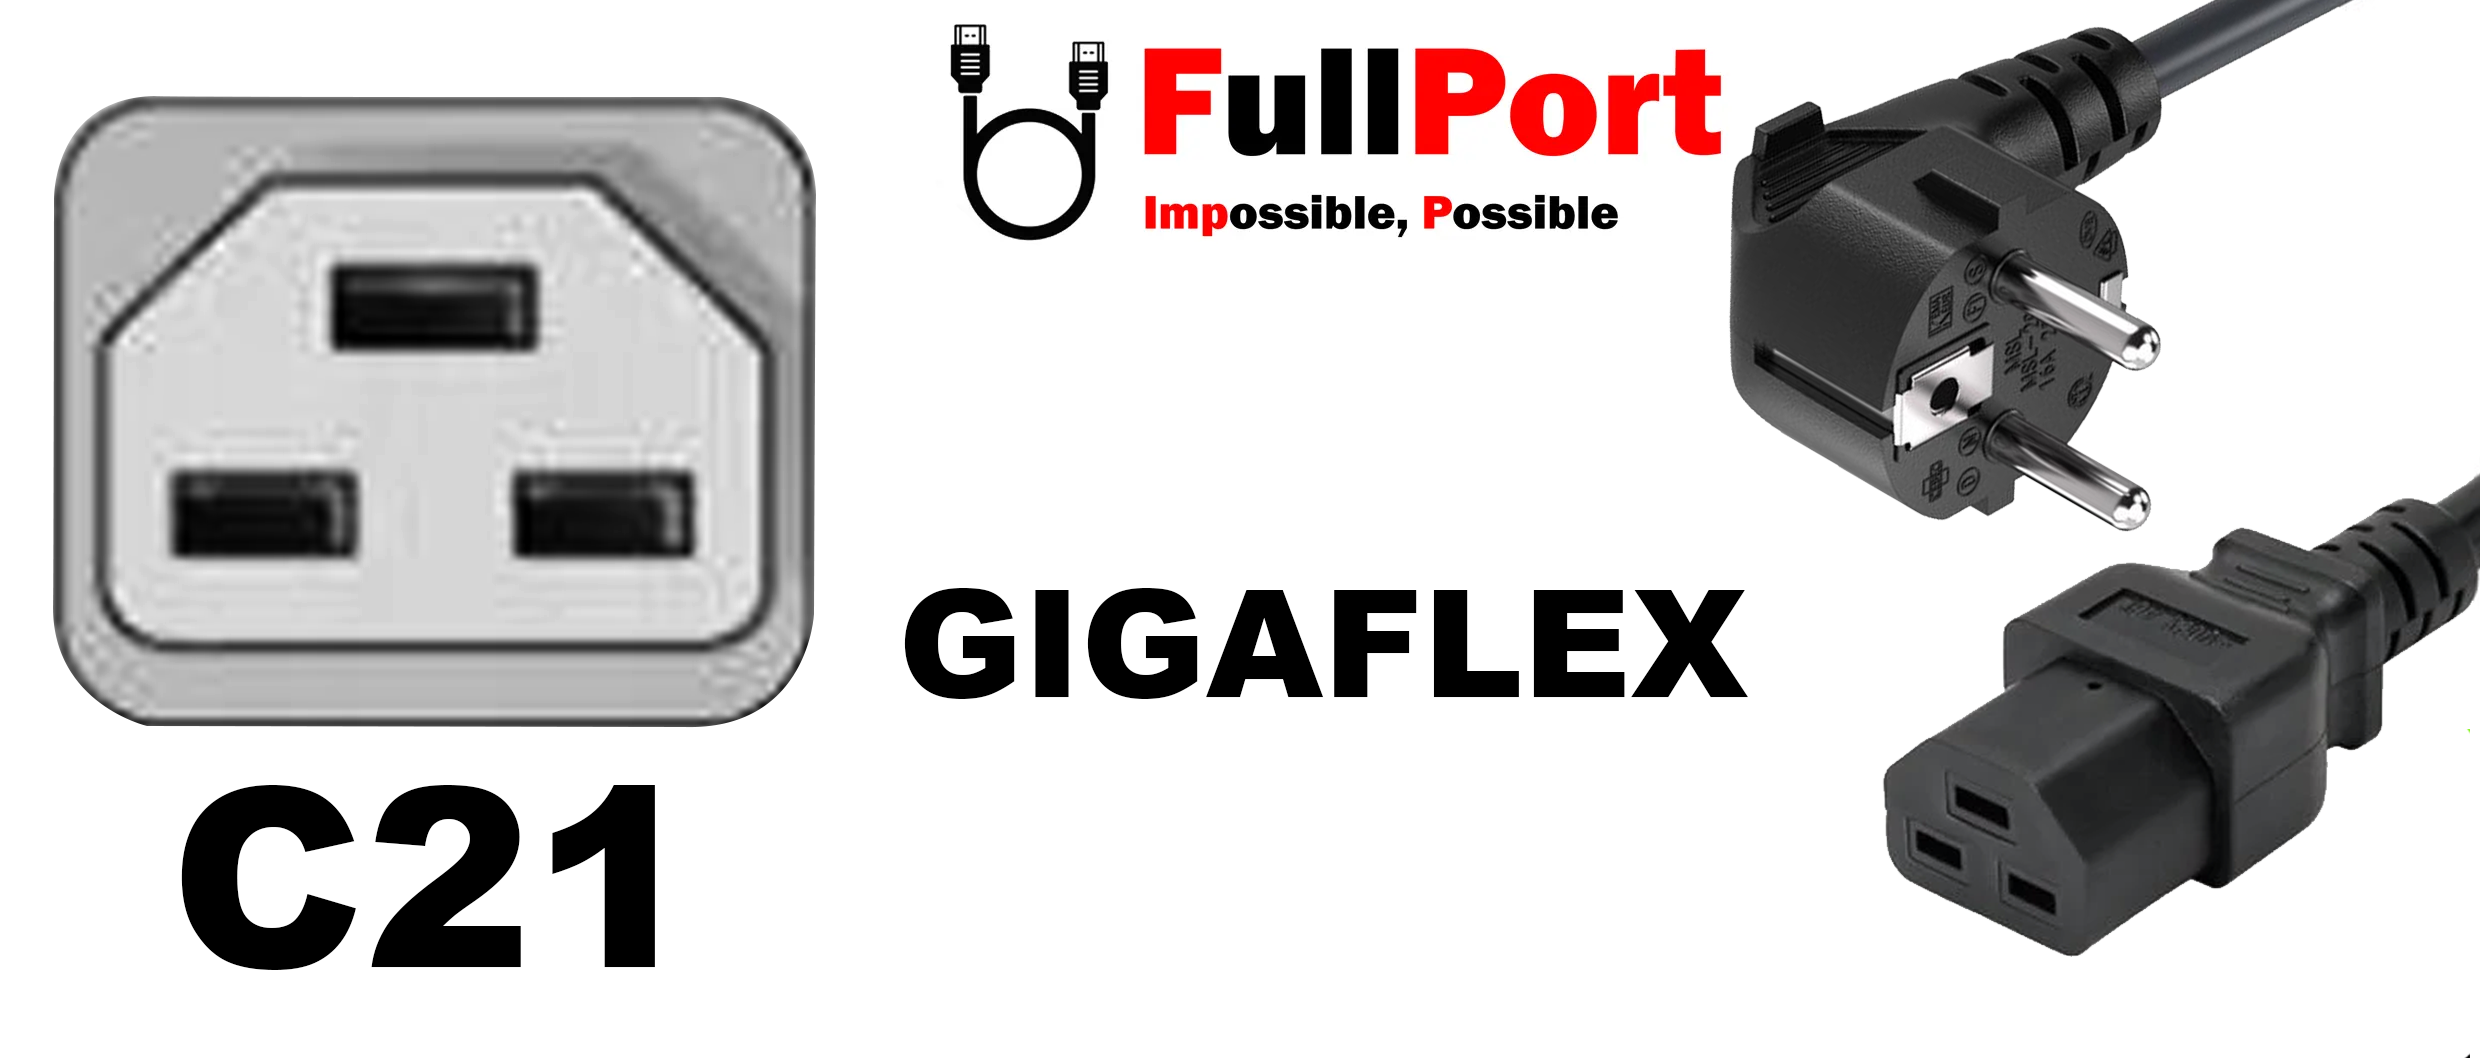 خرید کابل برق کیس EU-C21 گیگافلکس | GIGAFLEX از فروشگاه اینترنتی تخصصی کابل و تبدیل فول پورت